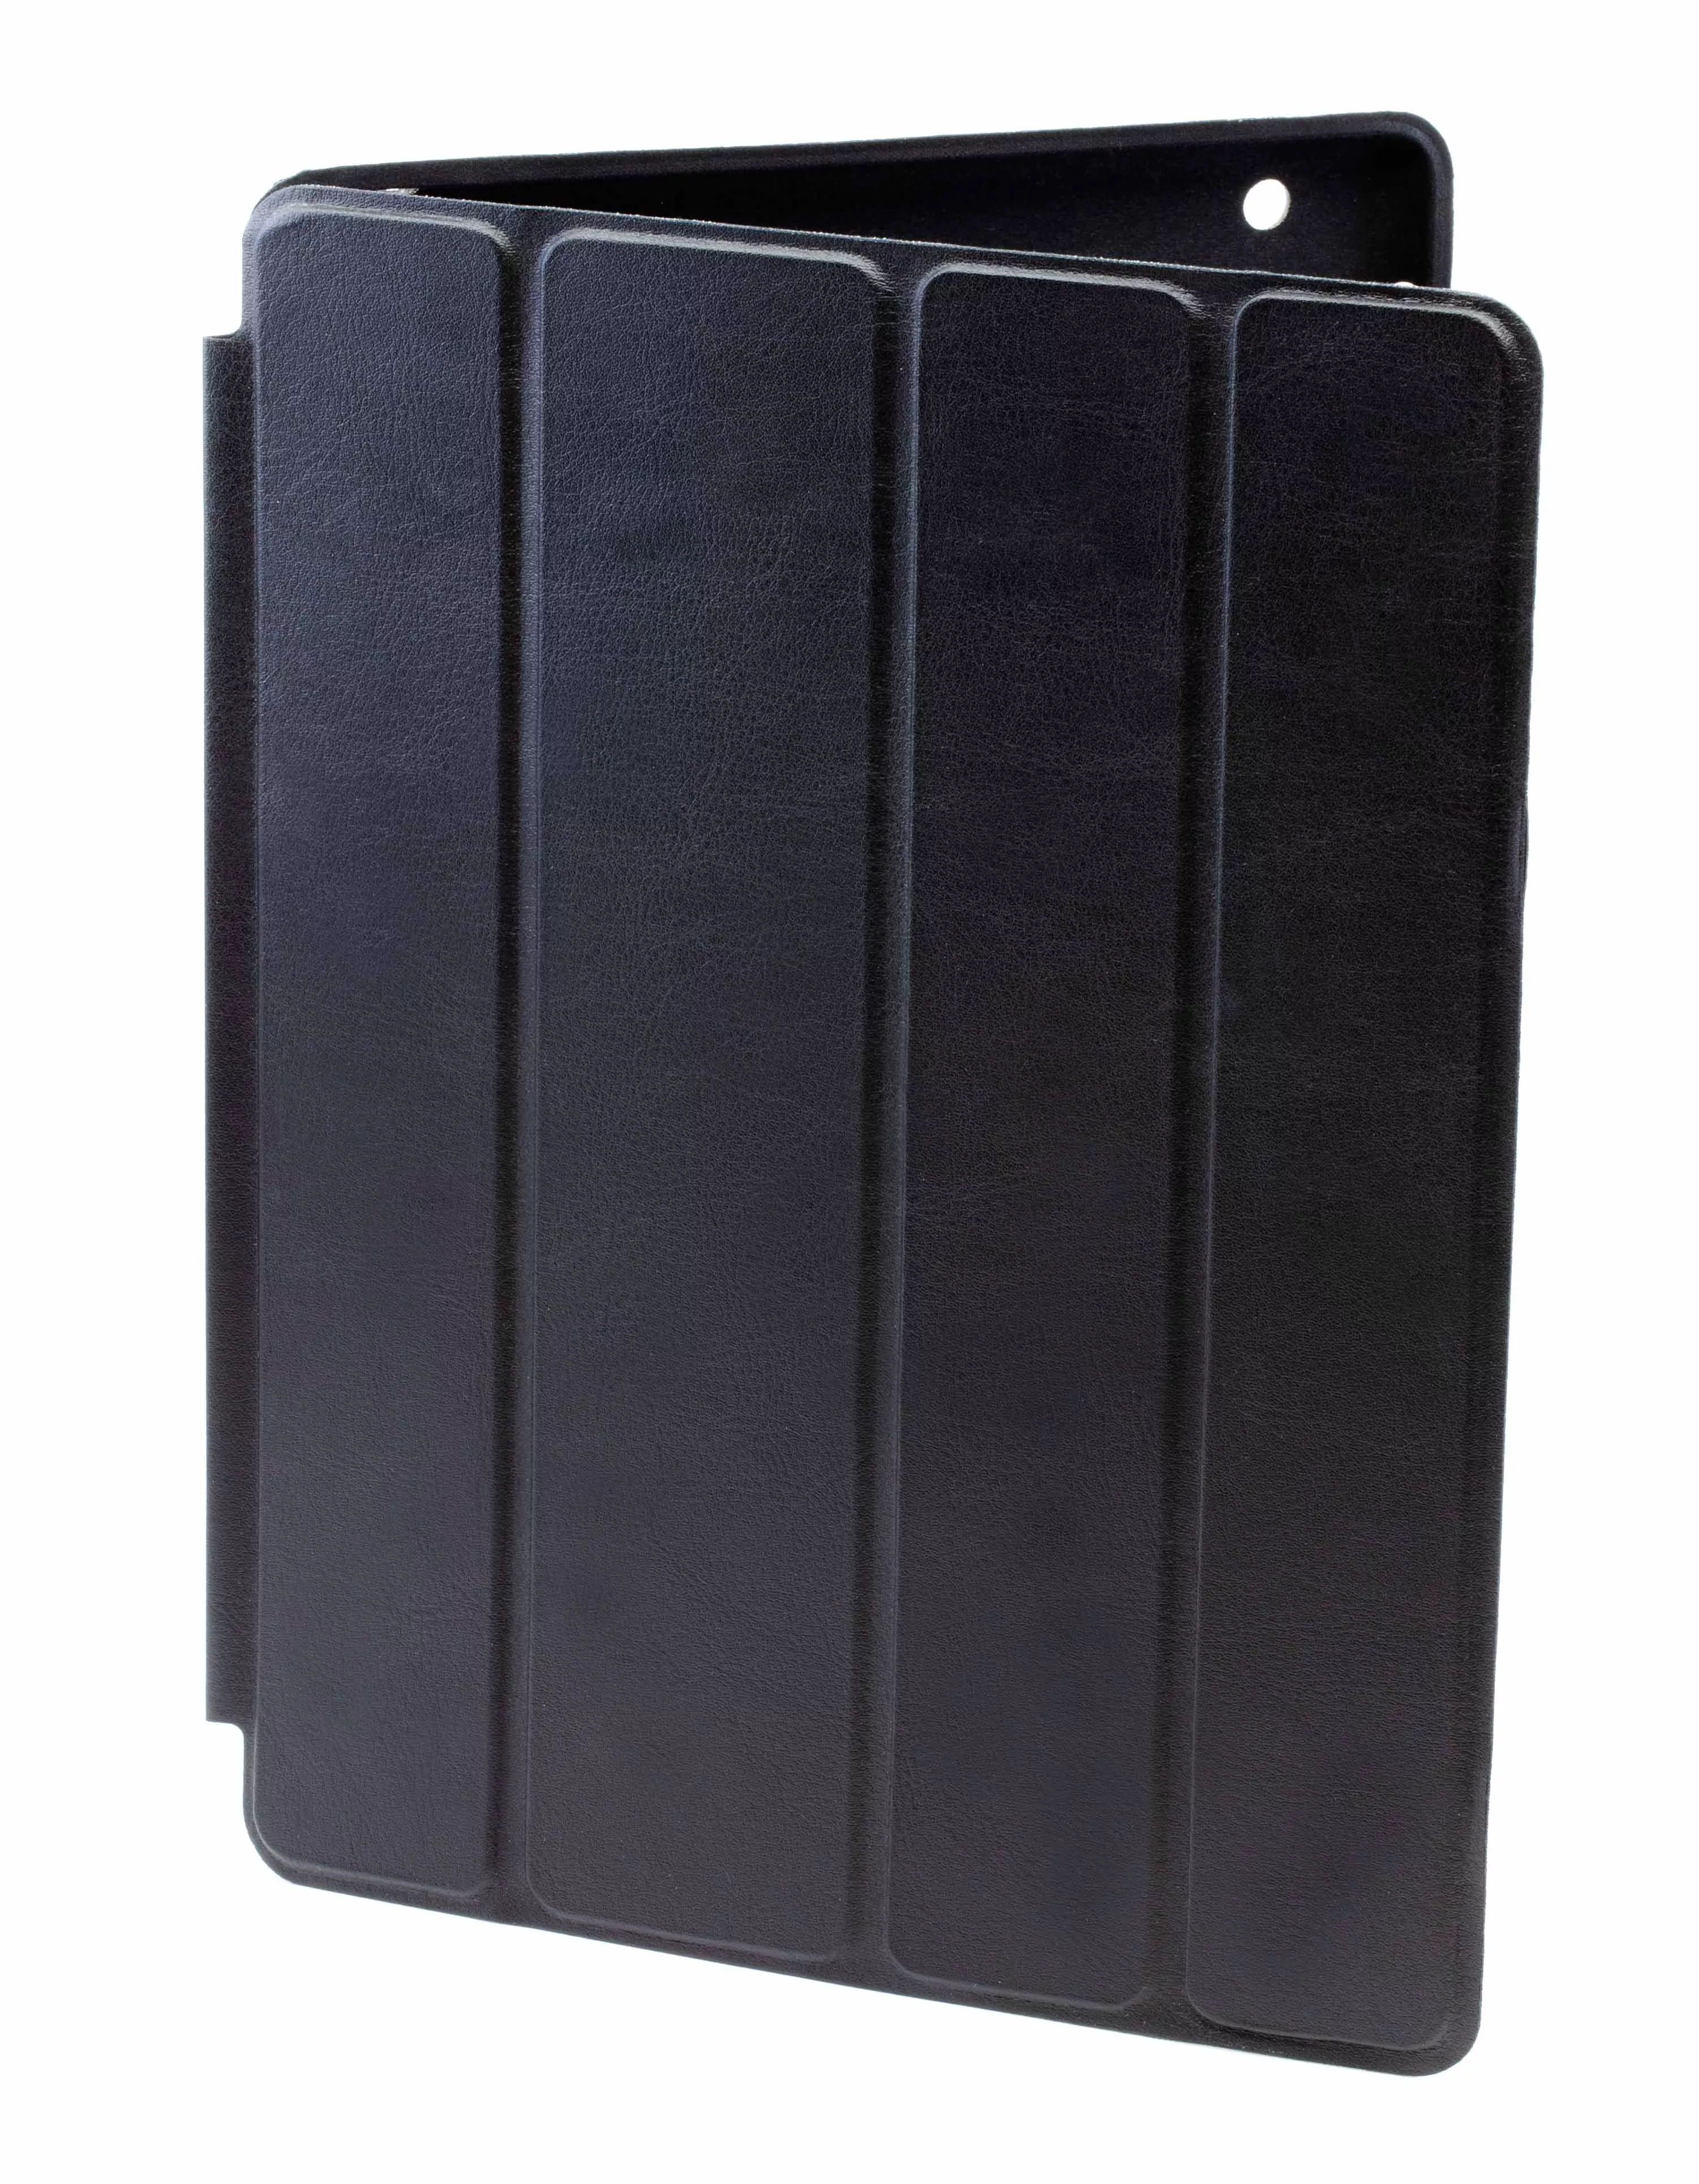 Чехол Smart Case для iPad 2/3/4 - Черный. Вид 1